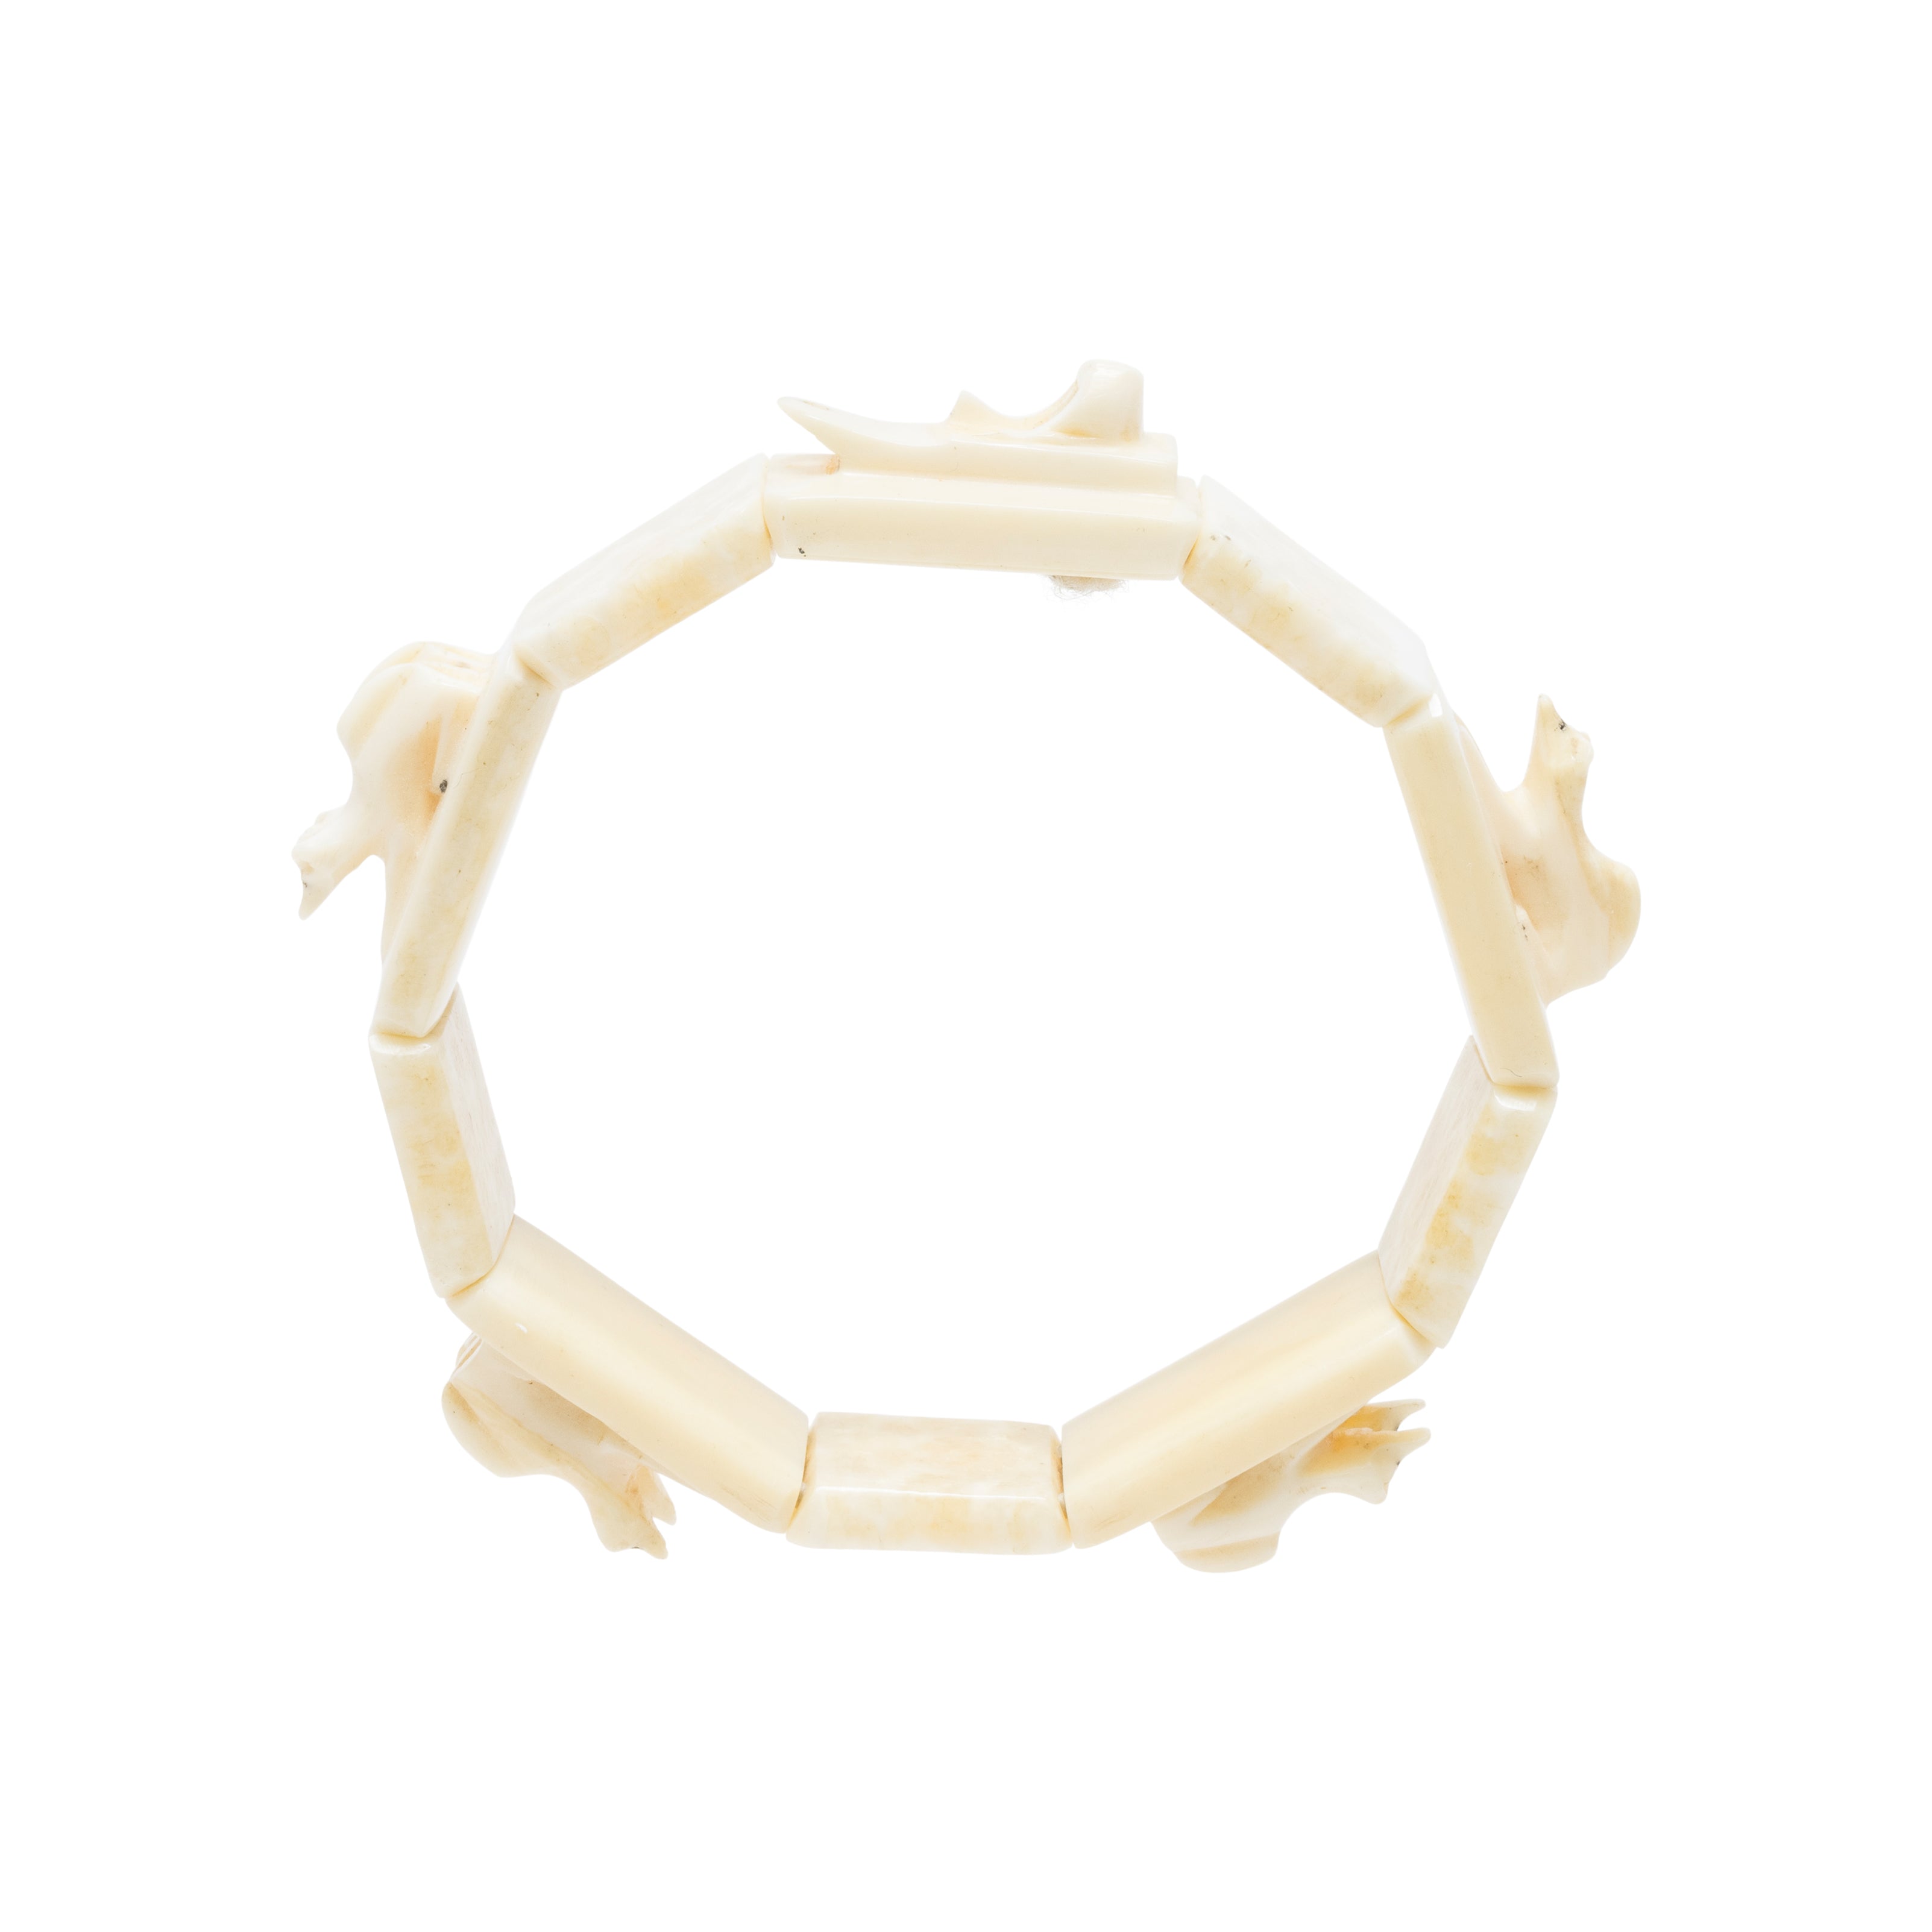 Inuit Walrus Ivory Bracelet